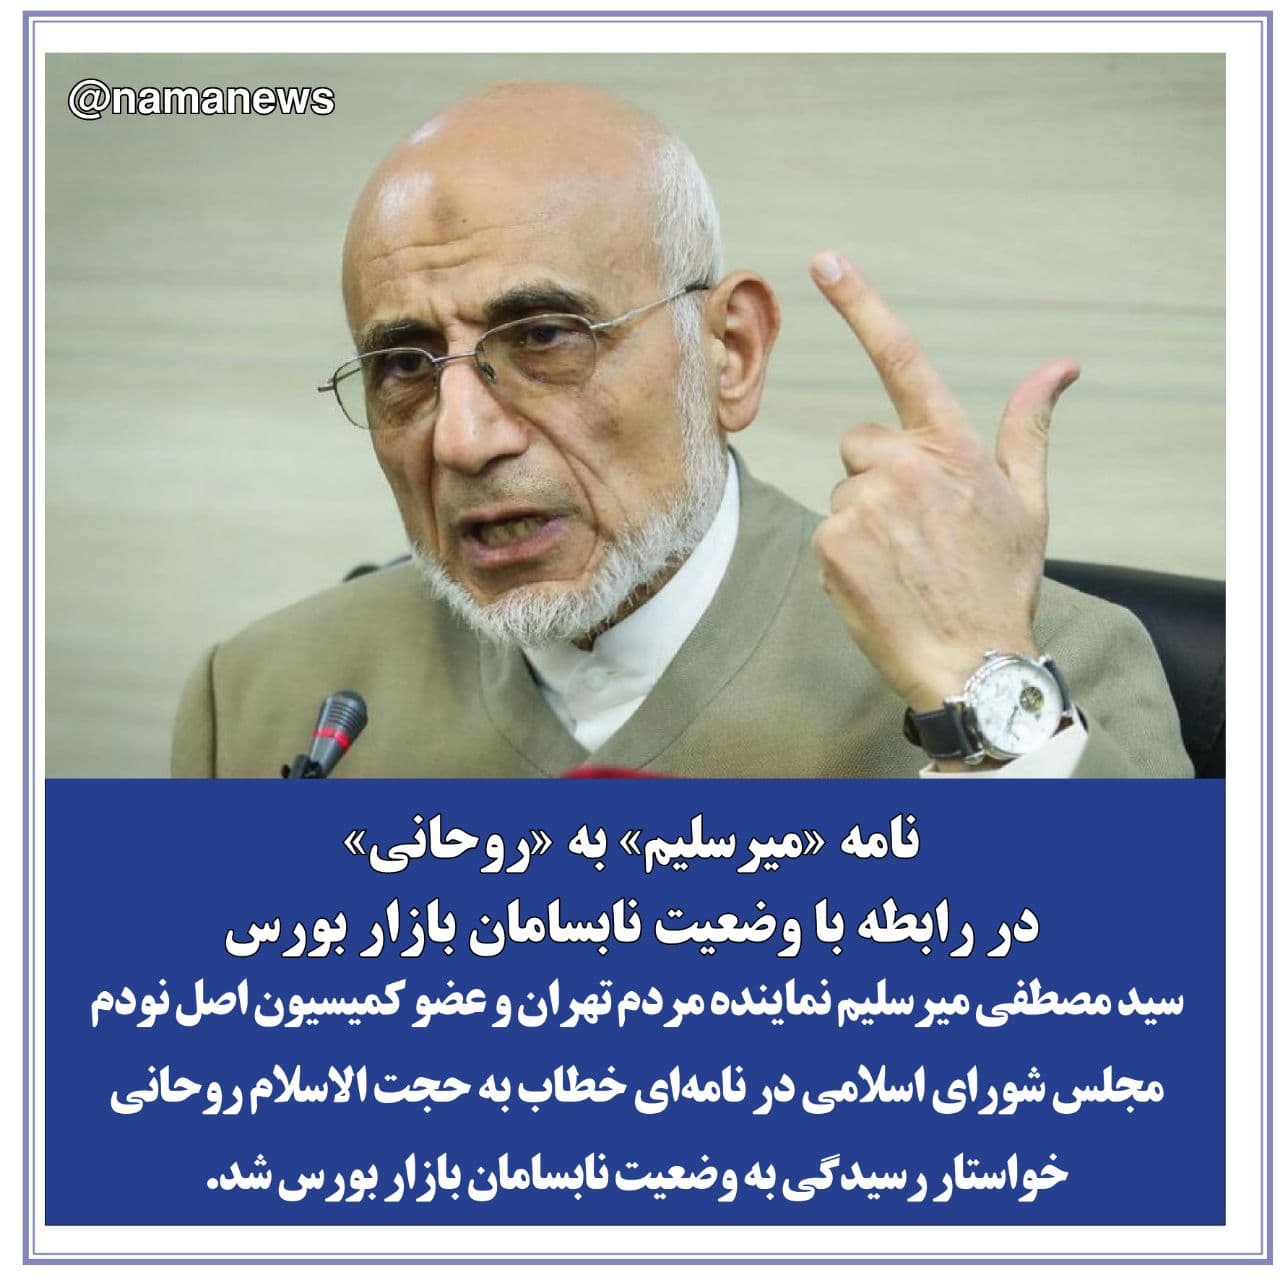 عکس خبري -عکس نوشت/نامه "ميرسليم" به "روحاني" در رابطه با وضعيت نابسامان بازار بورس